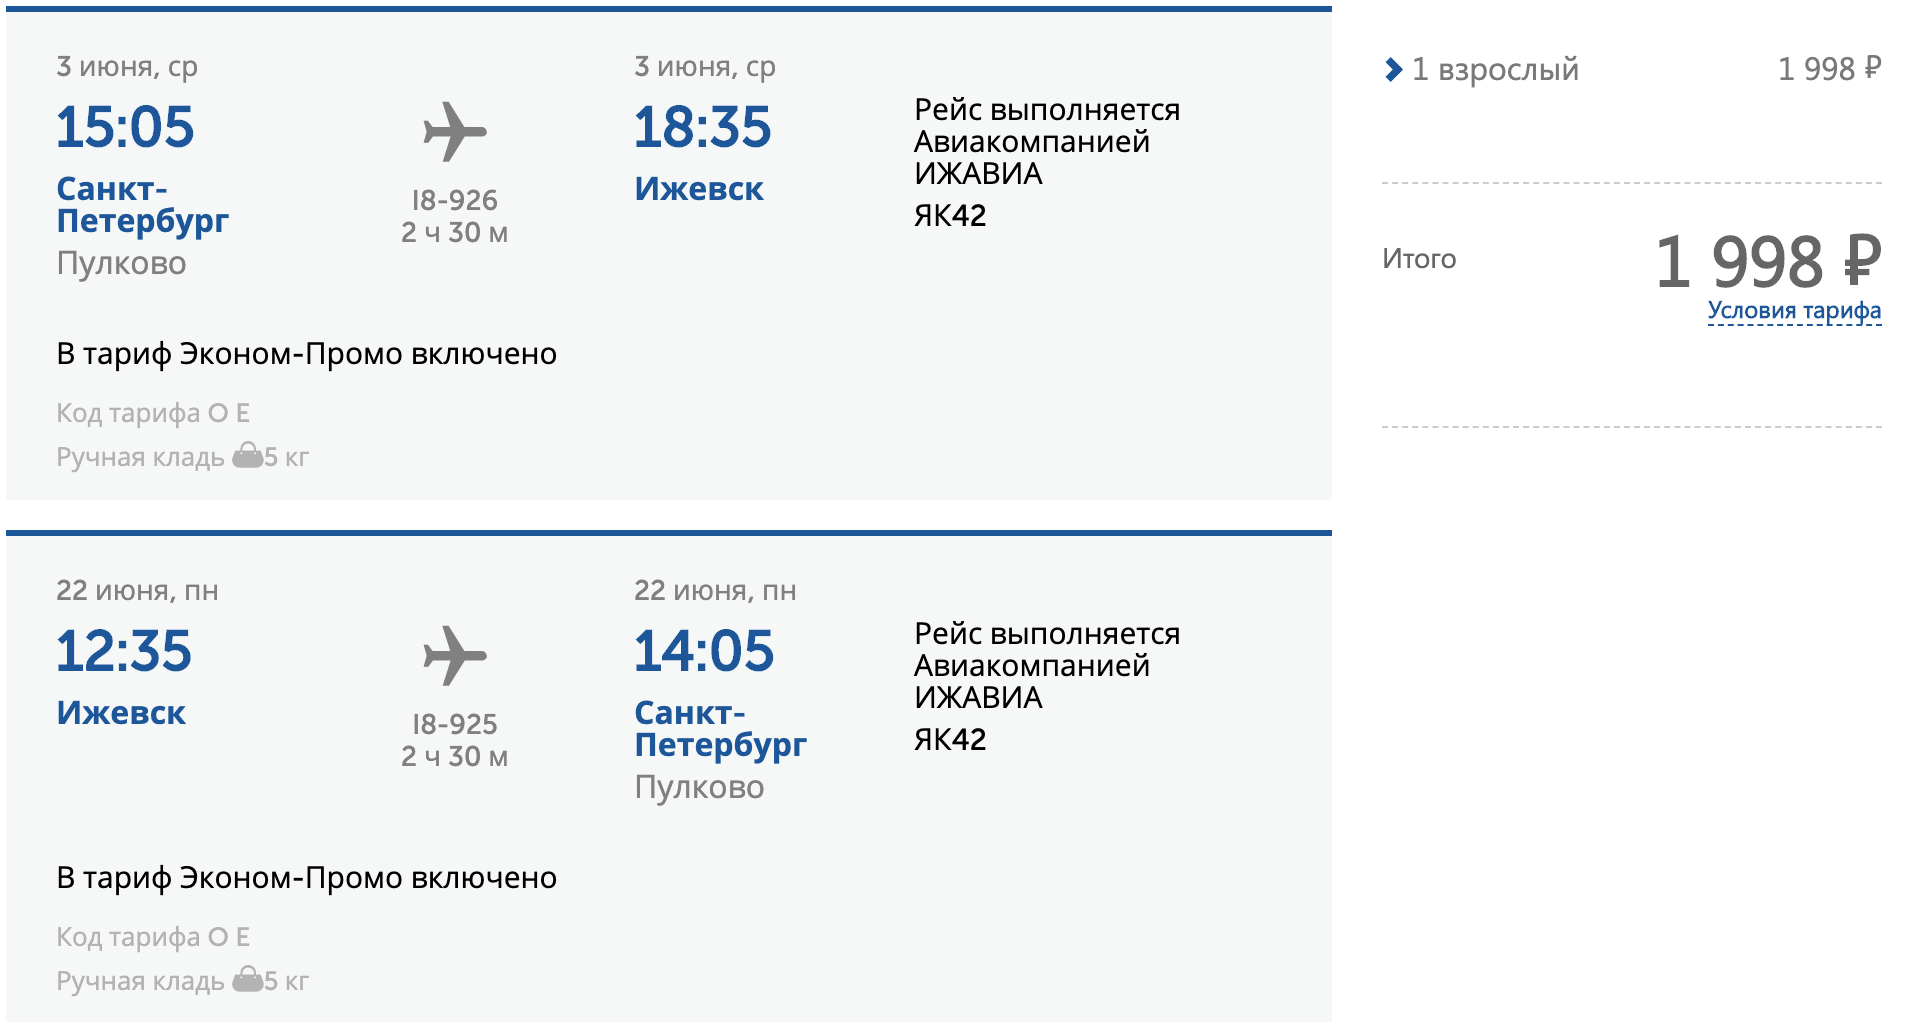 Билет архангельск сочи прямой рейс. Москва-Сочи авиабилеты. Авиабилеты самолет. Ижевск Сочи авиабилеты. Ижевск-Сочи авиабилеты прямой.